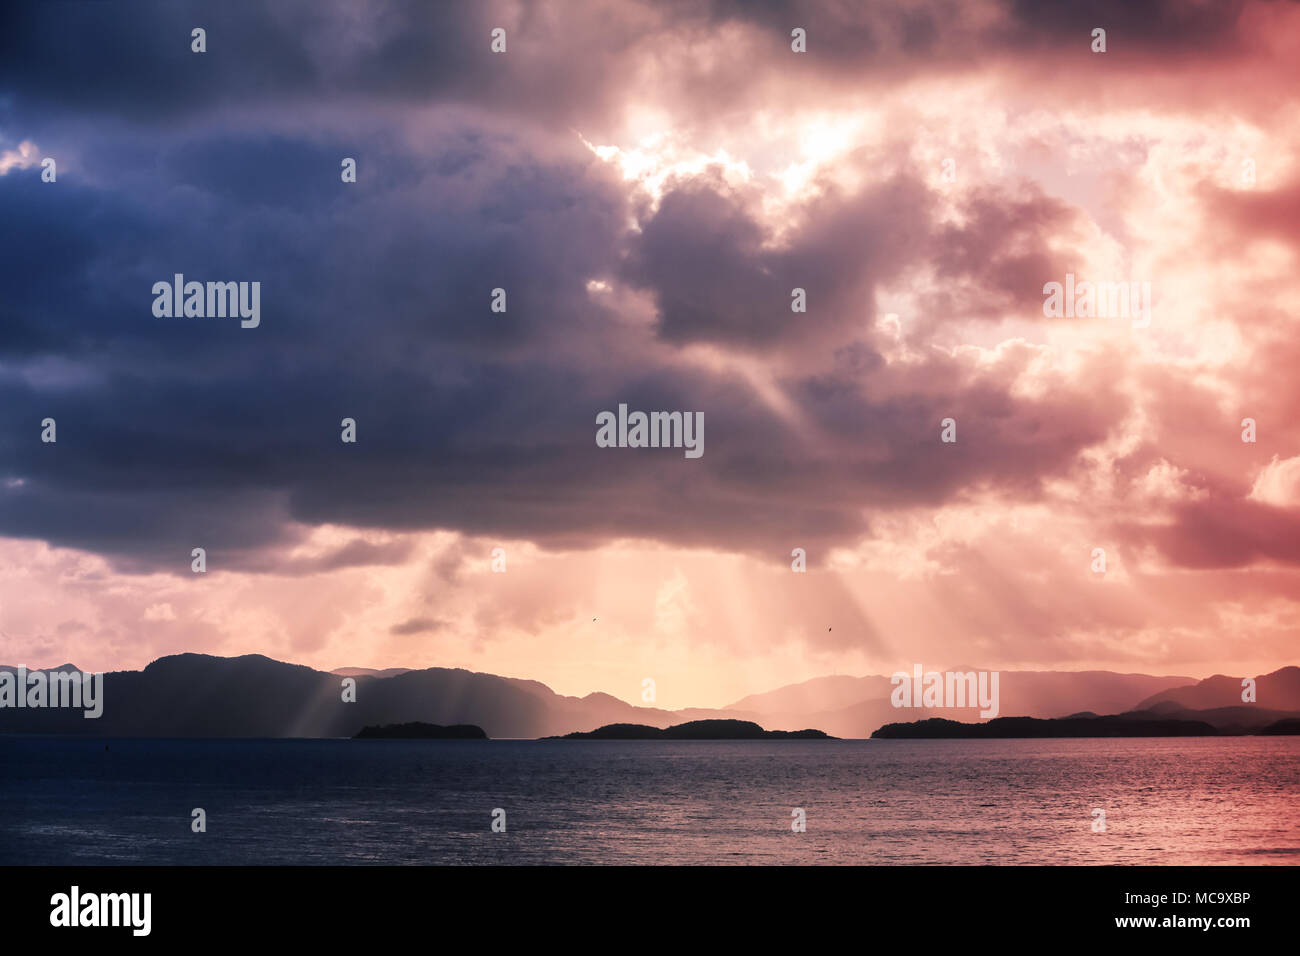 Paysage côtier norvégien avec vue sur la mer et les rayons de soleil colorés dans le ciel dramatique Banque D'Images